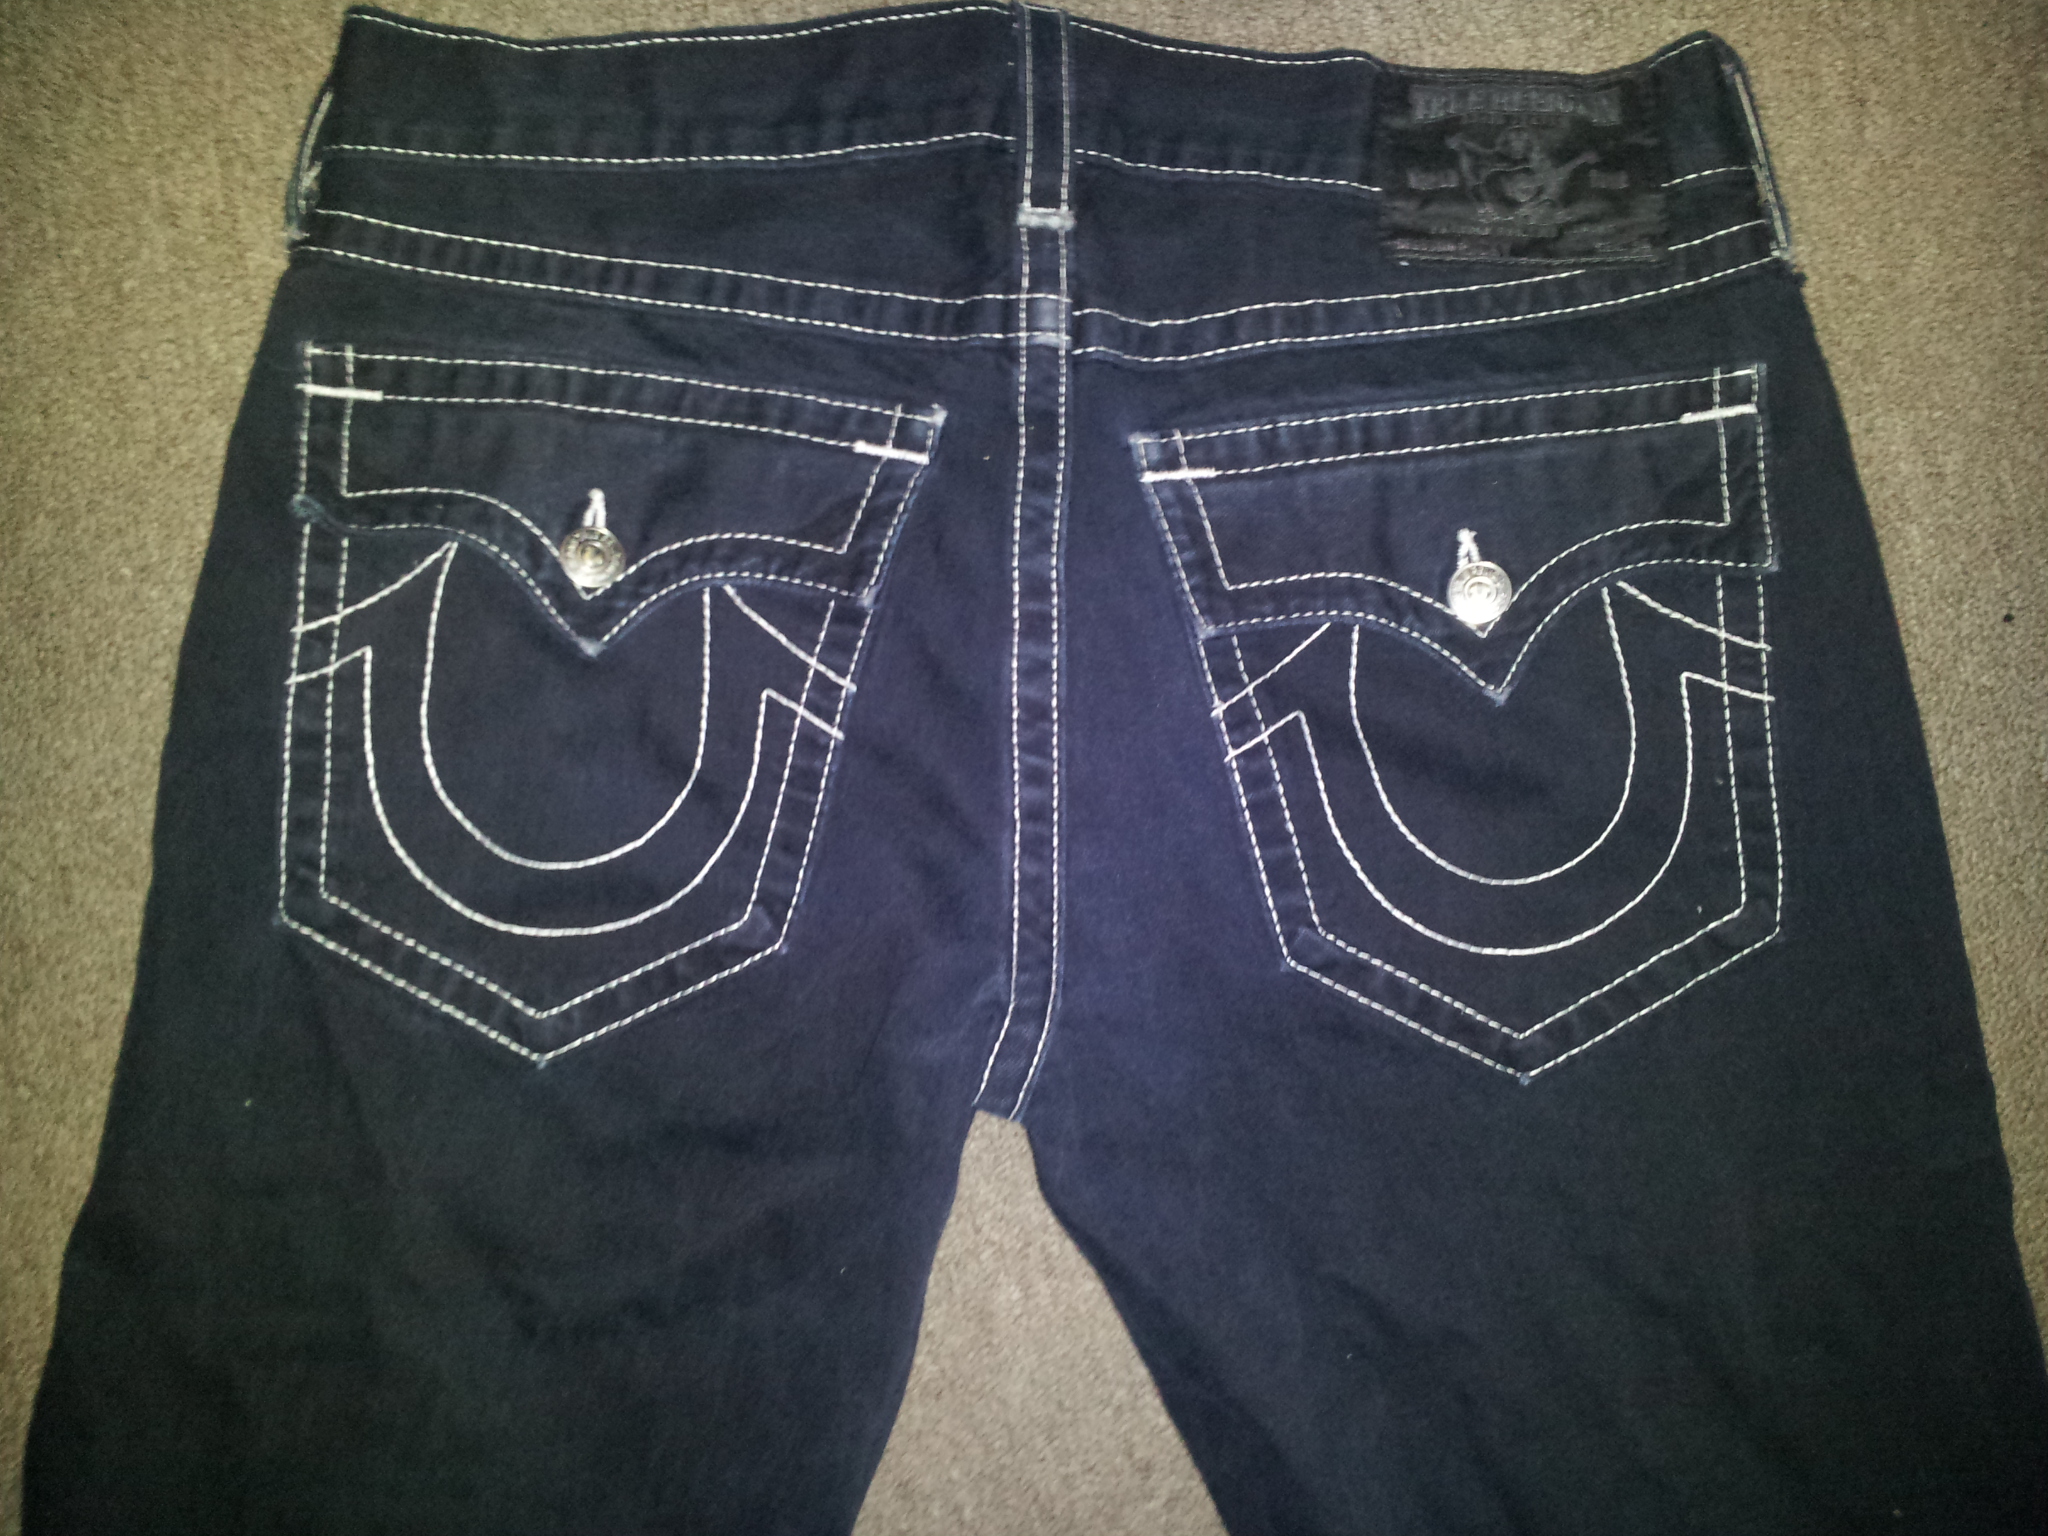 true religion jeans pockets full of